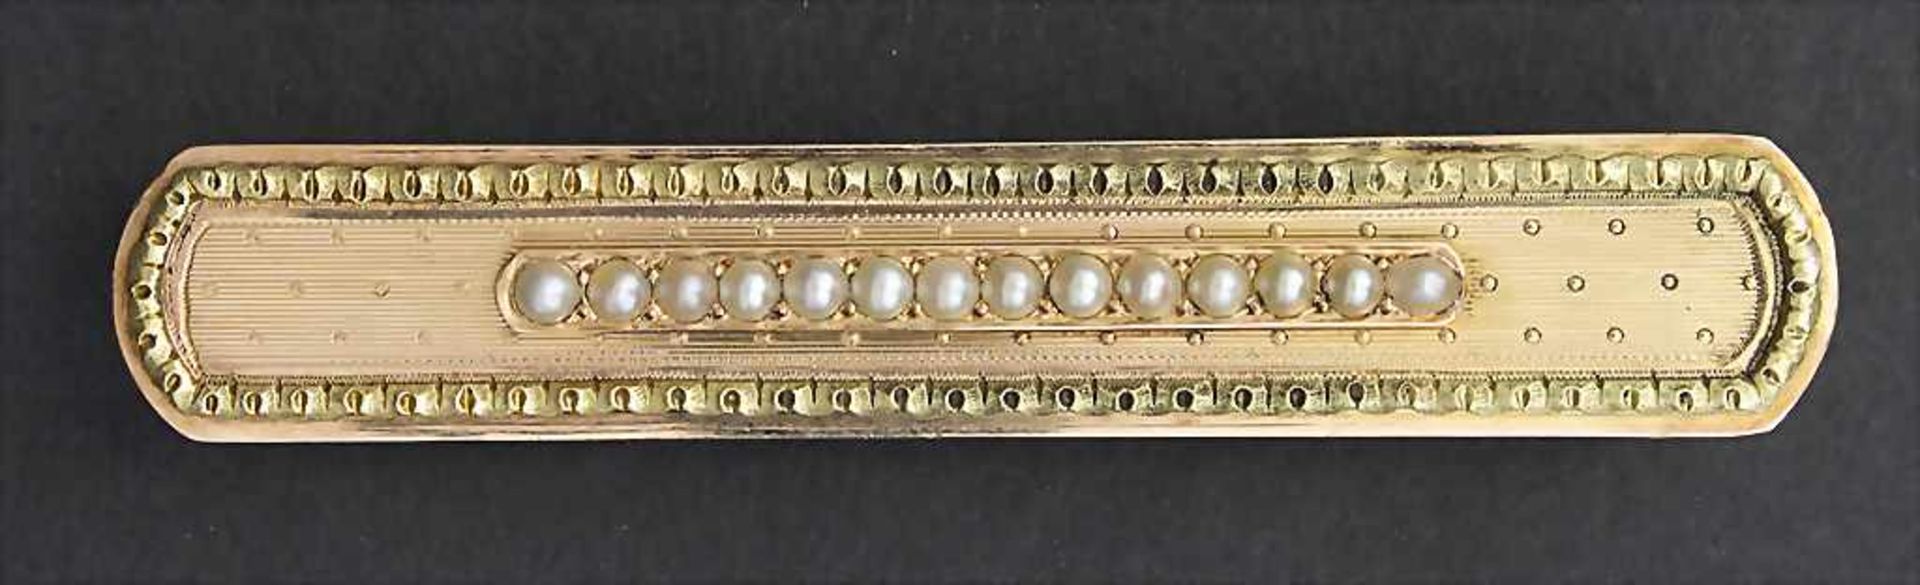 Empire Brosche / An Empire brooch, um 1820Material: Gelbgold / Rotgold 750/000 18 Kt, mit Perlen,